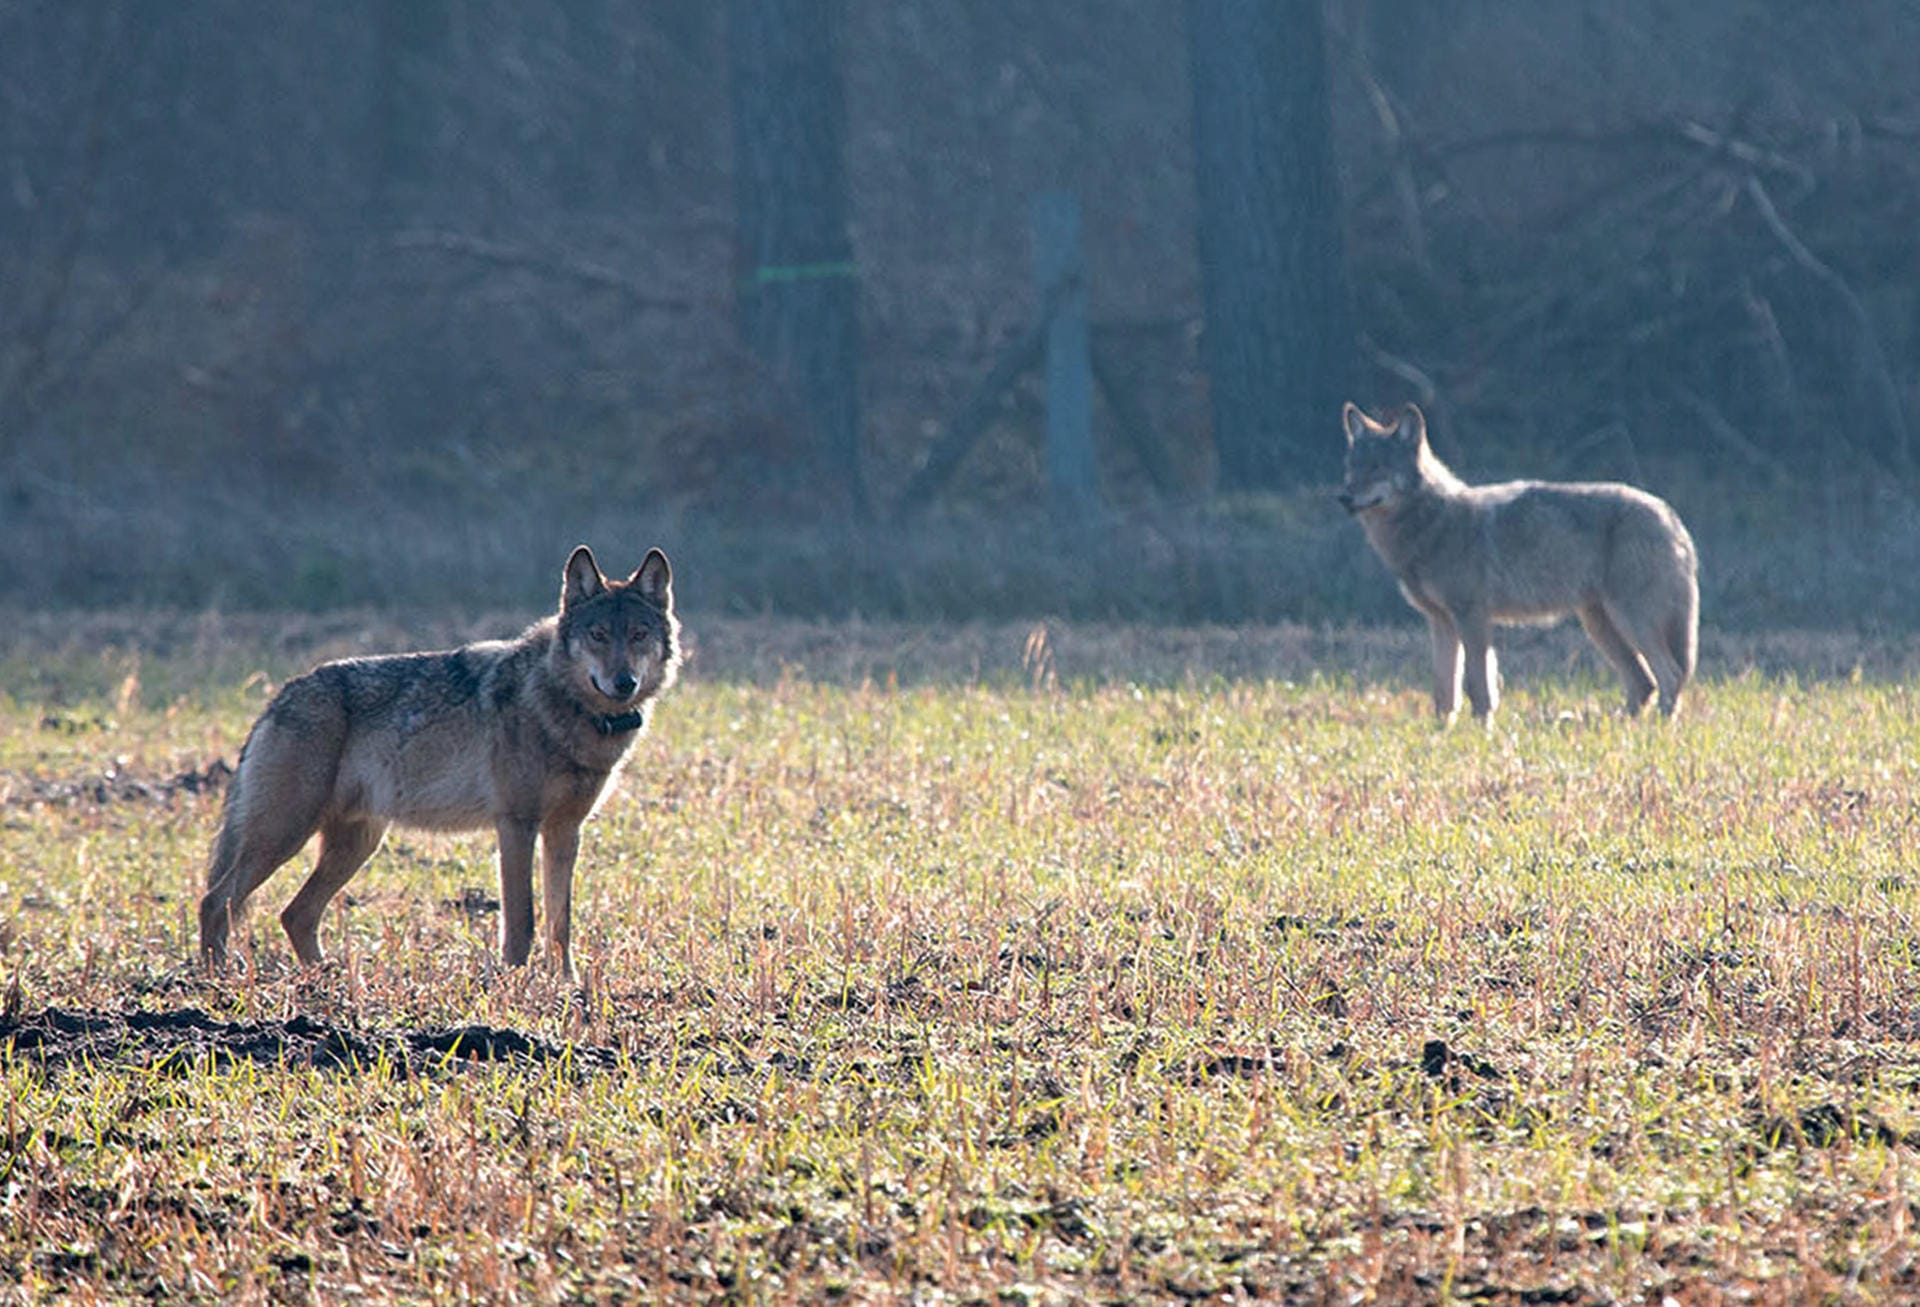 Der verhaltensauffällige Wolf "Kurti" (links) steht am im März 2016 auf einem Feld. Er wurde vermutlich von Menschen angefüttert und verlor daher die Scheu vor Menschen. Kurti wurde aufgrund seines Verhaltens vorsorglich getötet.